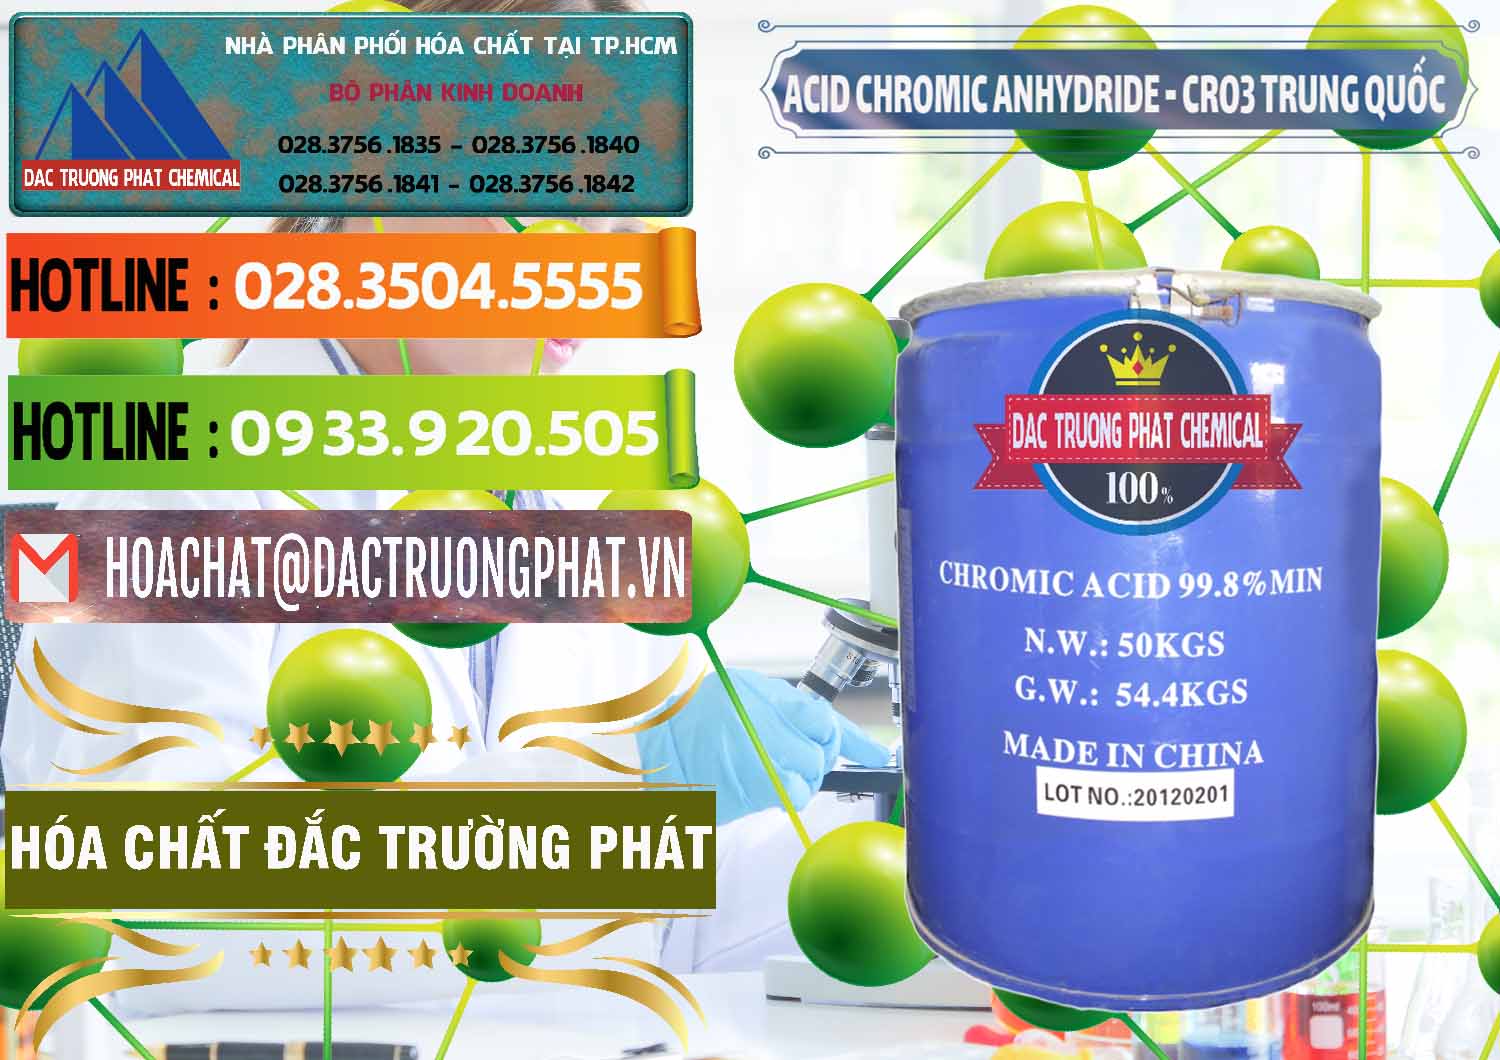 Cty kinh doanh & bán Acid Chromic Anhydride - Cromic CRO3 Trung Quốc China - 0007 - Cty cung cấp & phân phối hóa chất tại TP.HCM - cungcaphoachat.com.vn